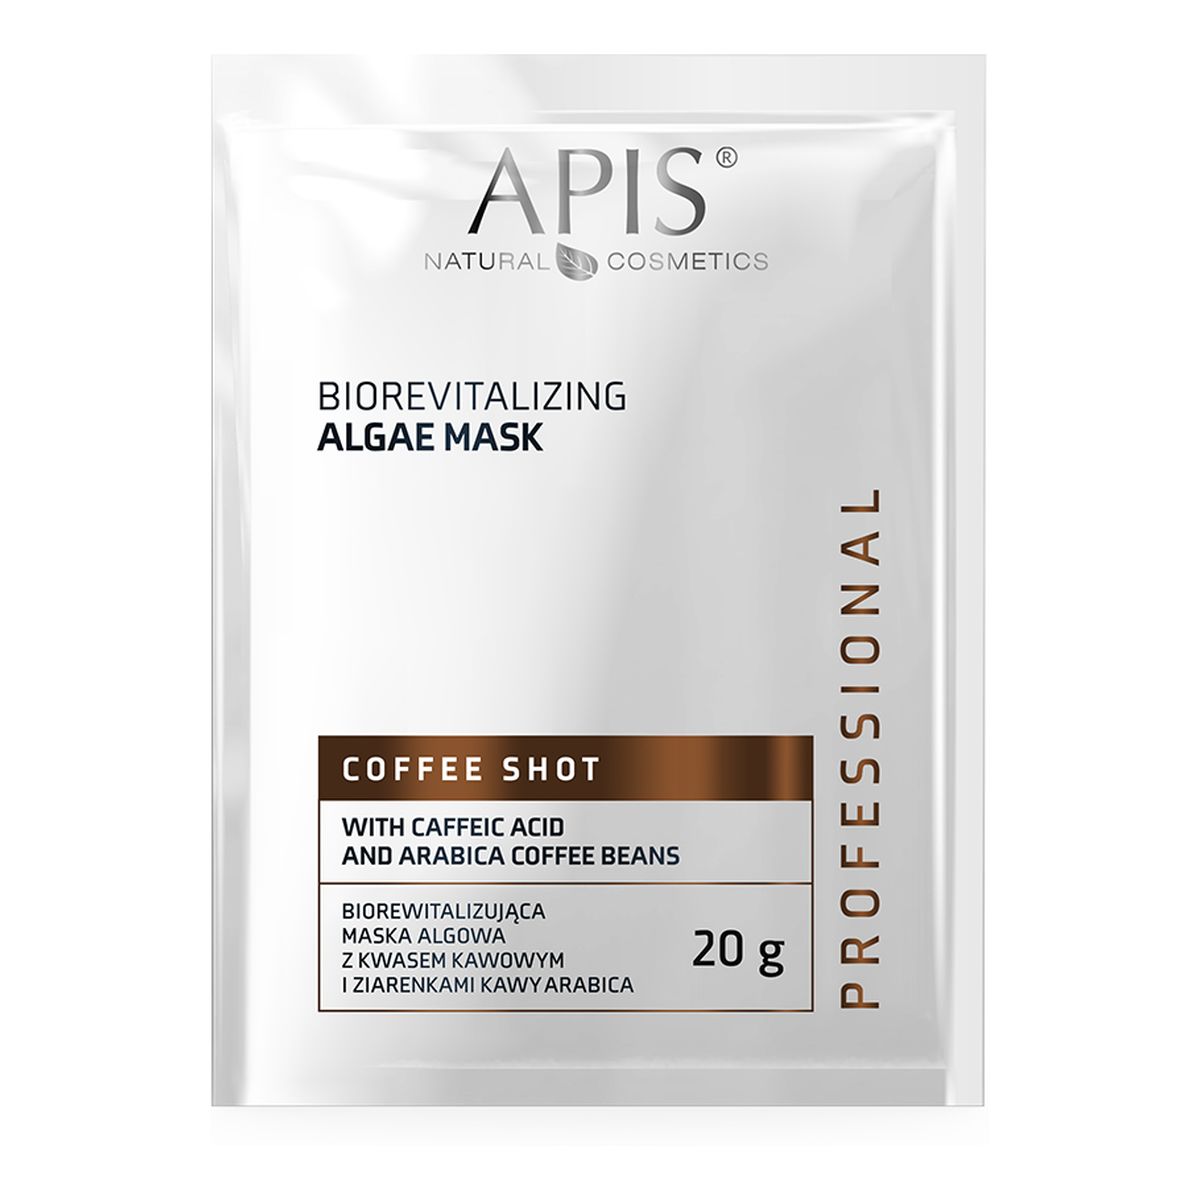 Apis Coffee shot biorewitalizująca maska algowa z kwasem kawowym i ziarenkami kawy arabica 20g 20g